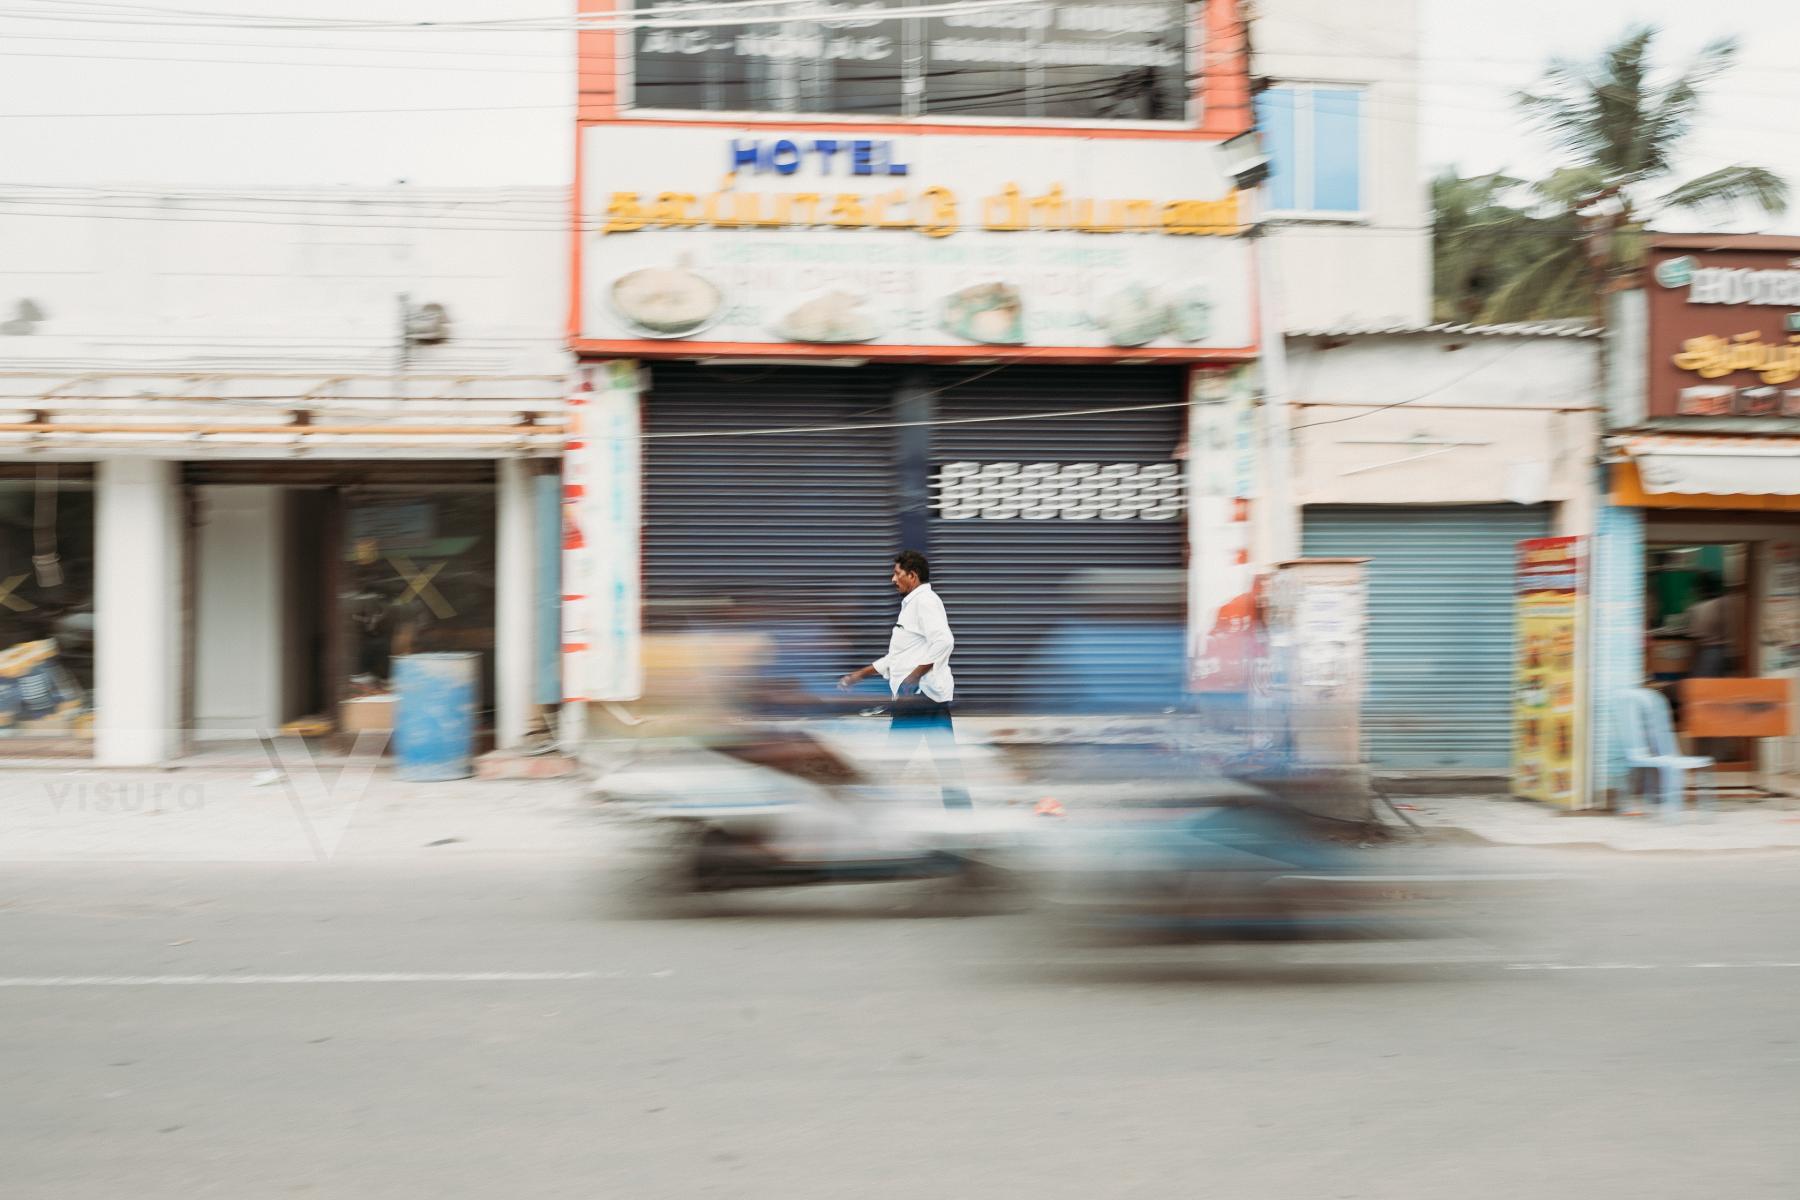 Purchase Streets of Chennai, India  by Jyotsna Bhamidipati